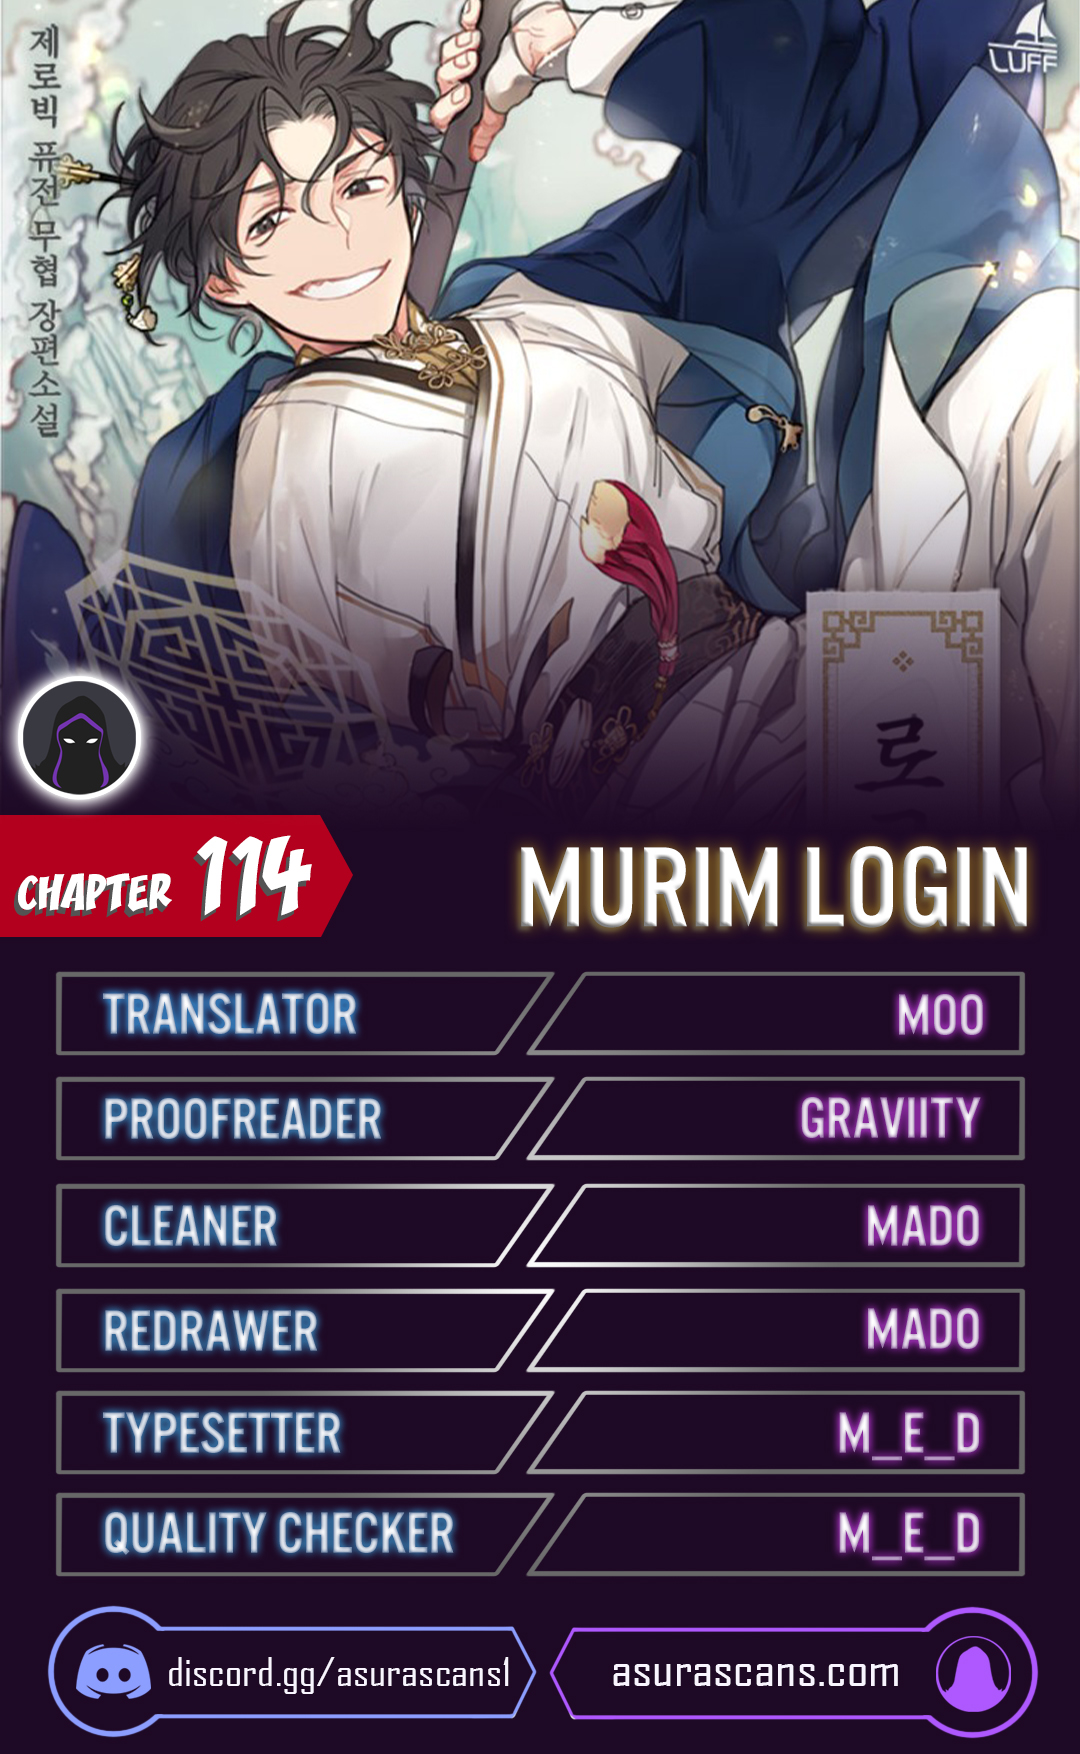 Murim Login - Chapter 14431 - Image 1